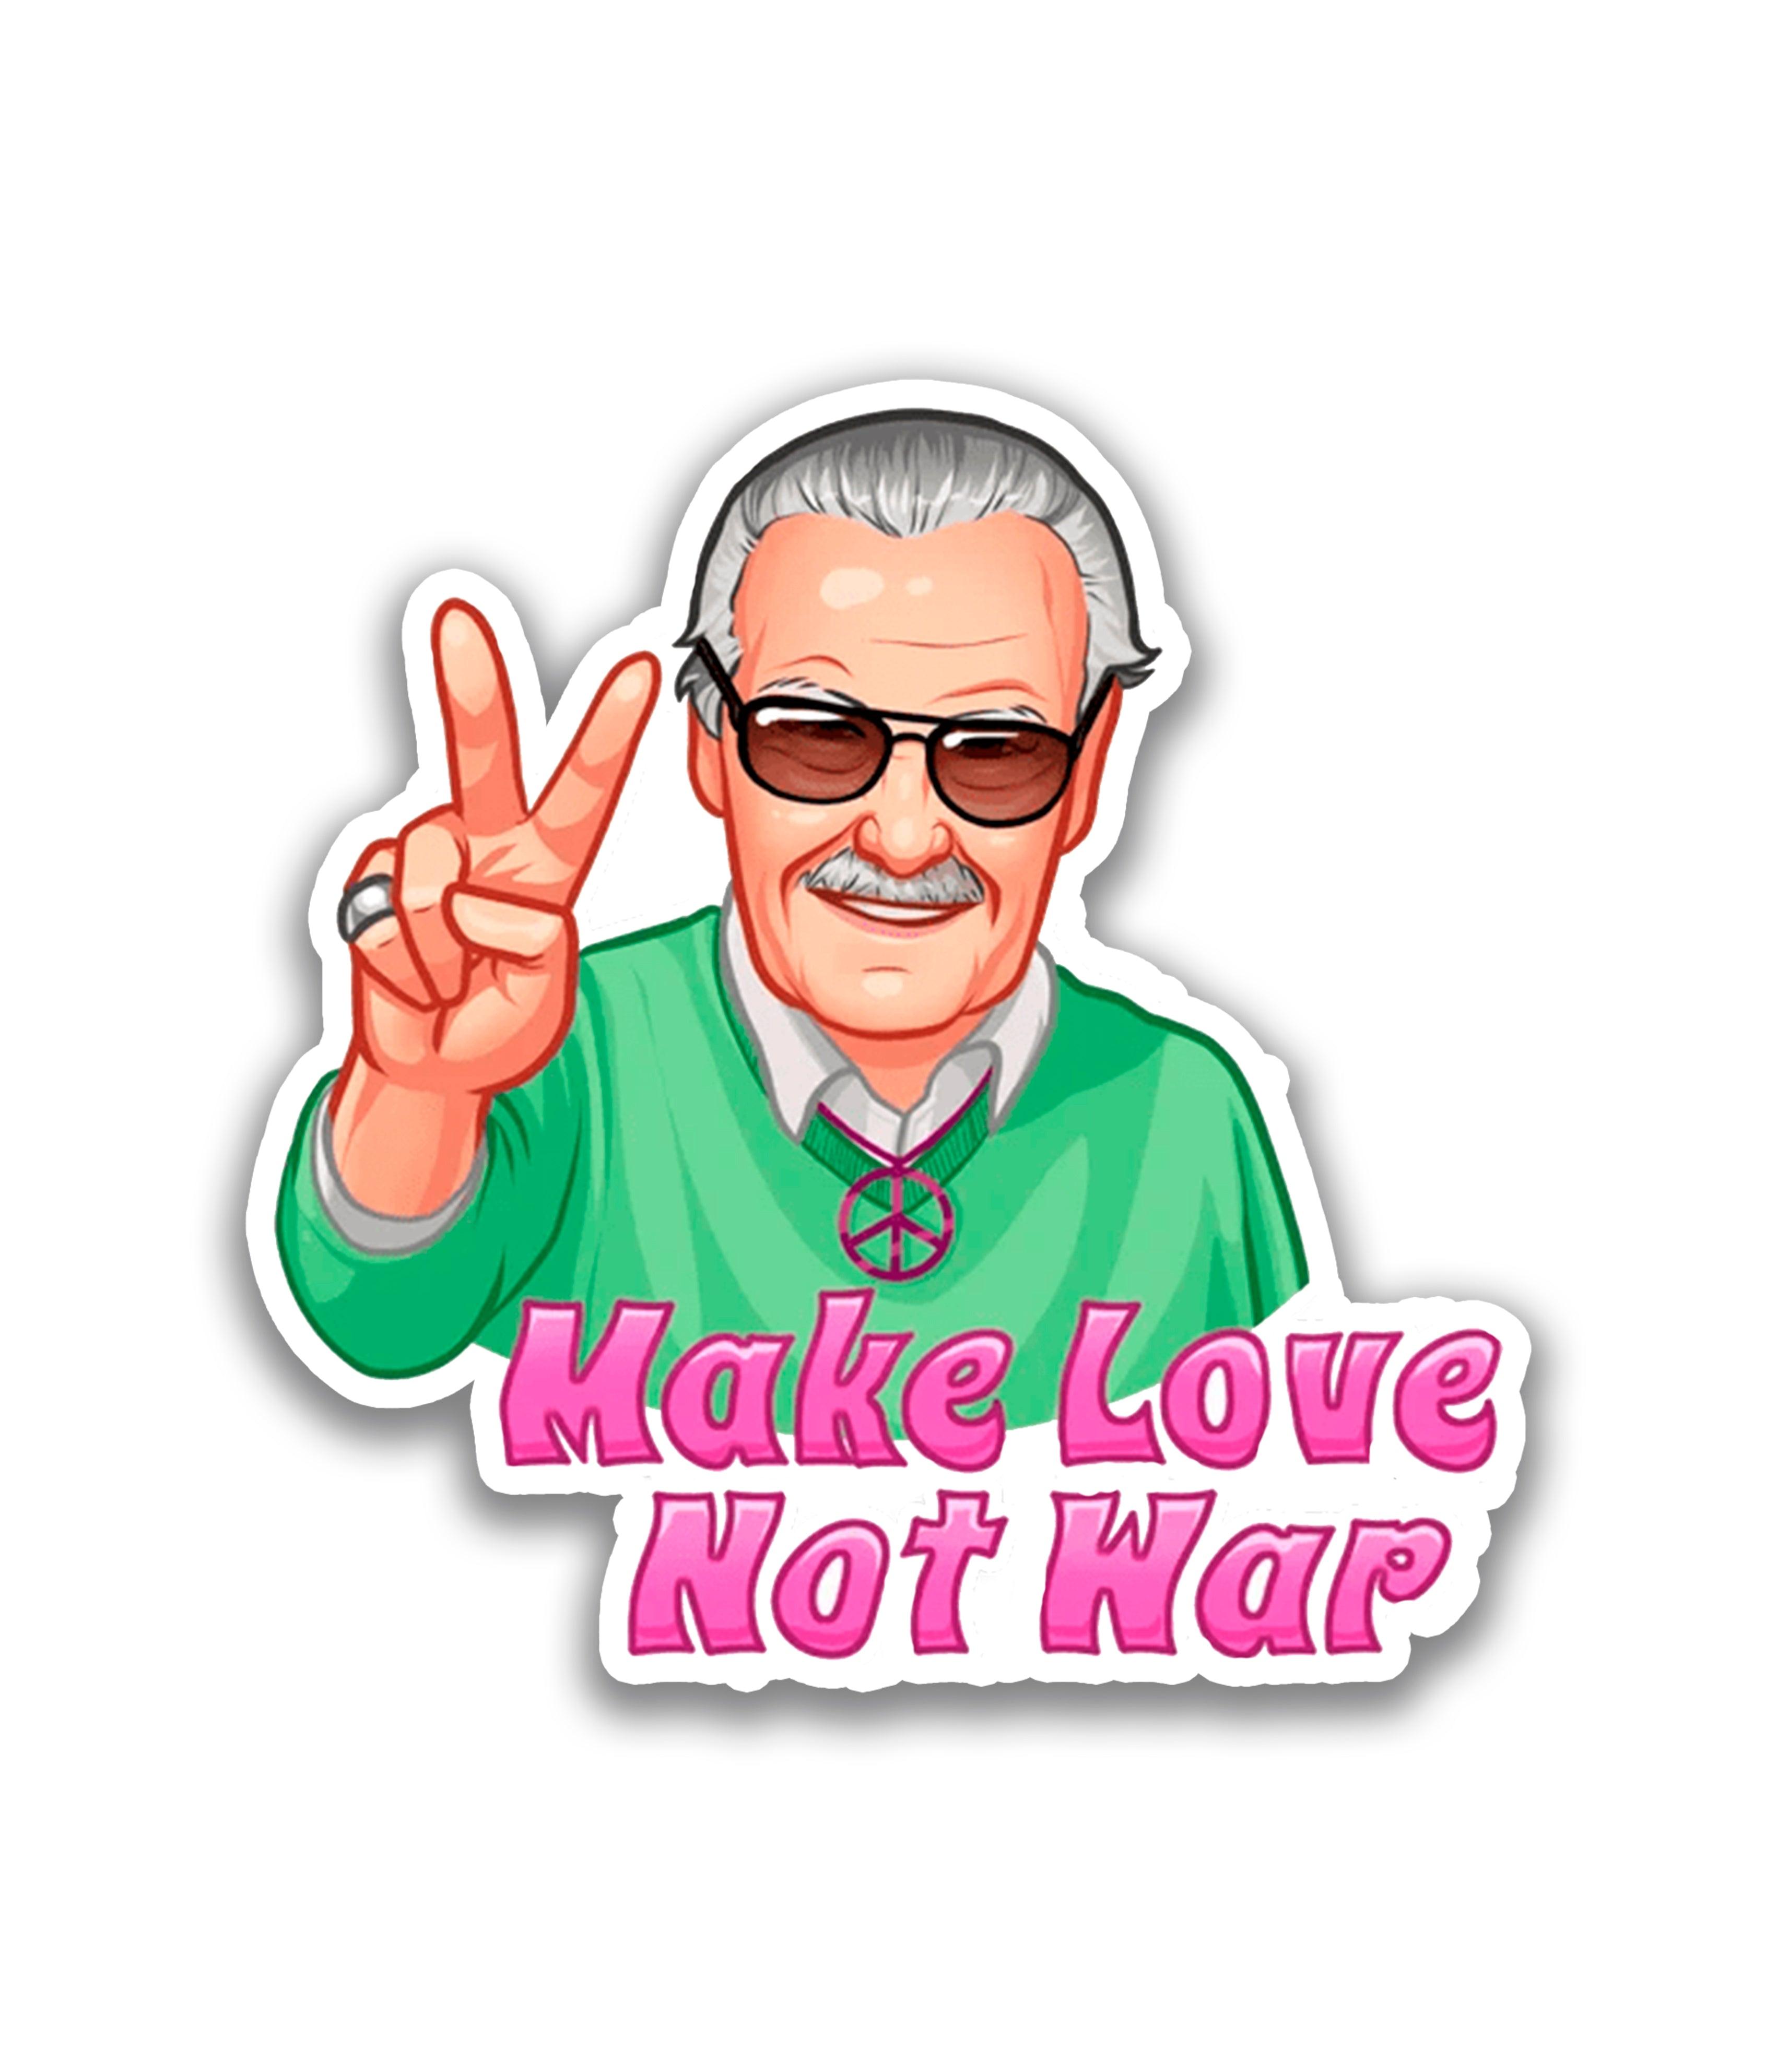 Make love, not war - Rei do Sticker